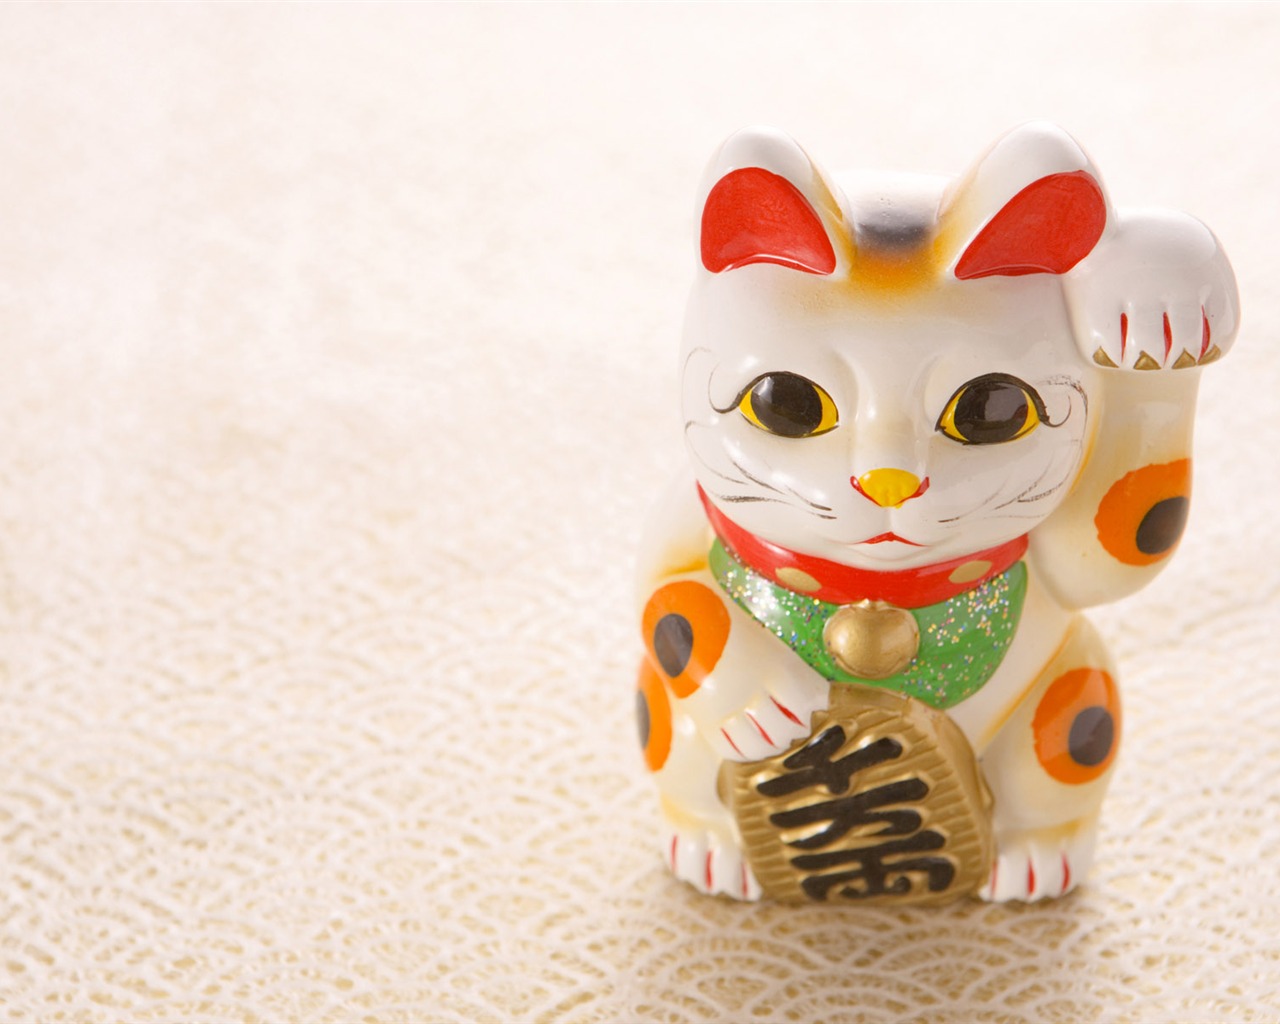 Fondos de año nuevo japonés Cultura (3) #20 - 1280x1024